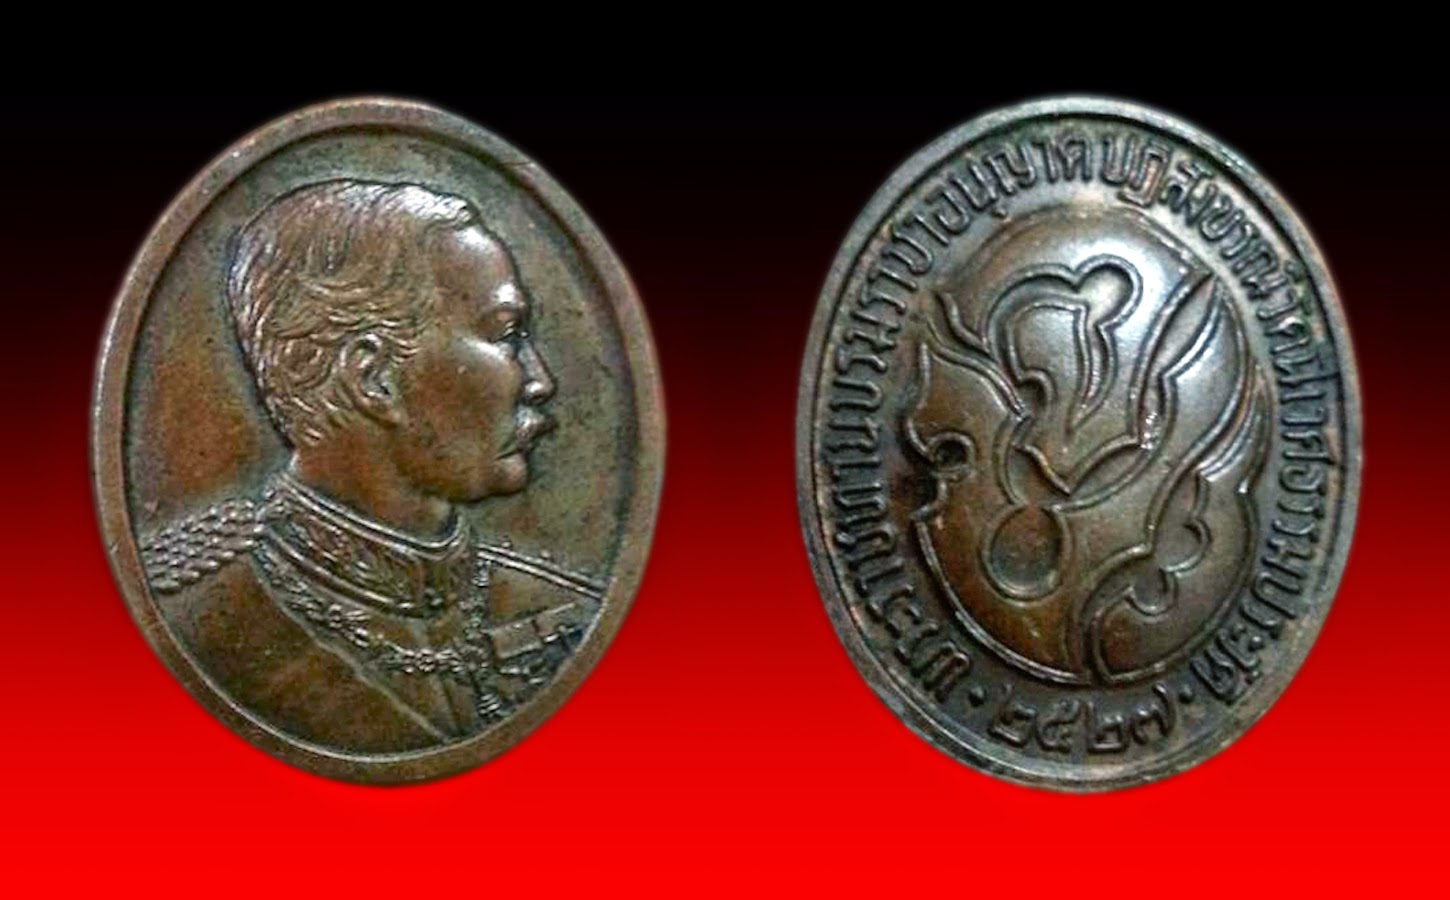  เหรียญ ร.5 วัดนิเวศธรรมประวัติปี พ.ศ 2527